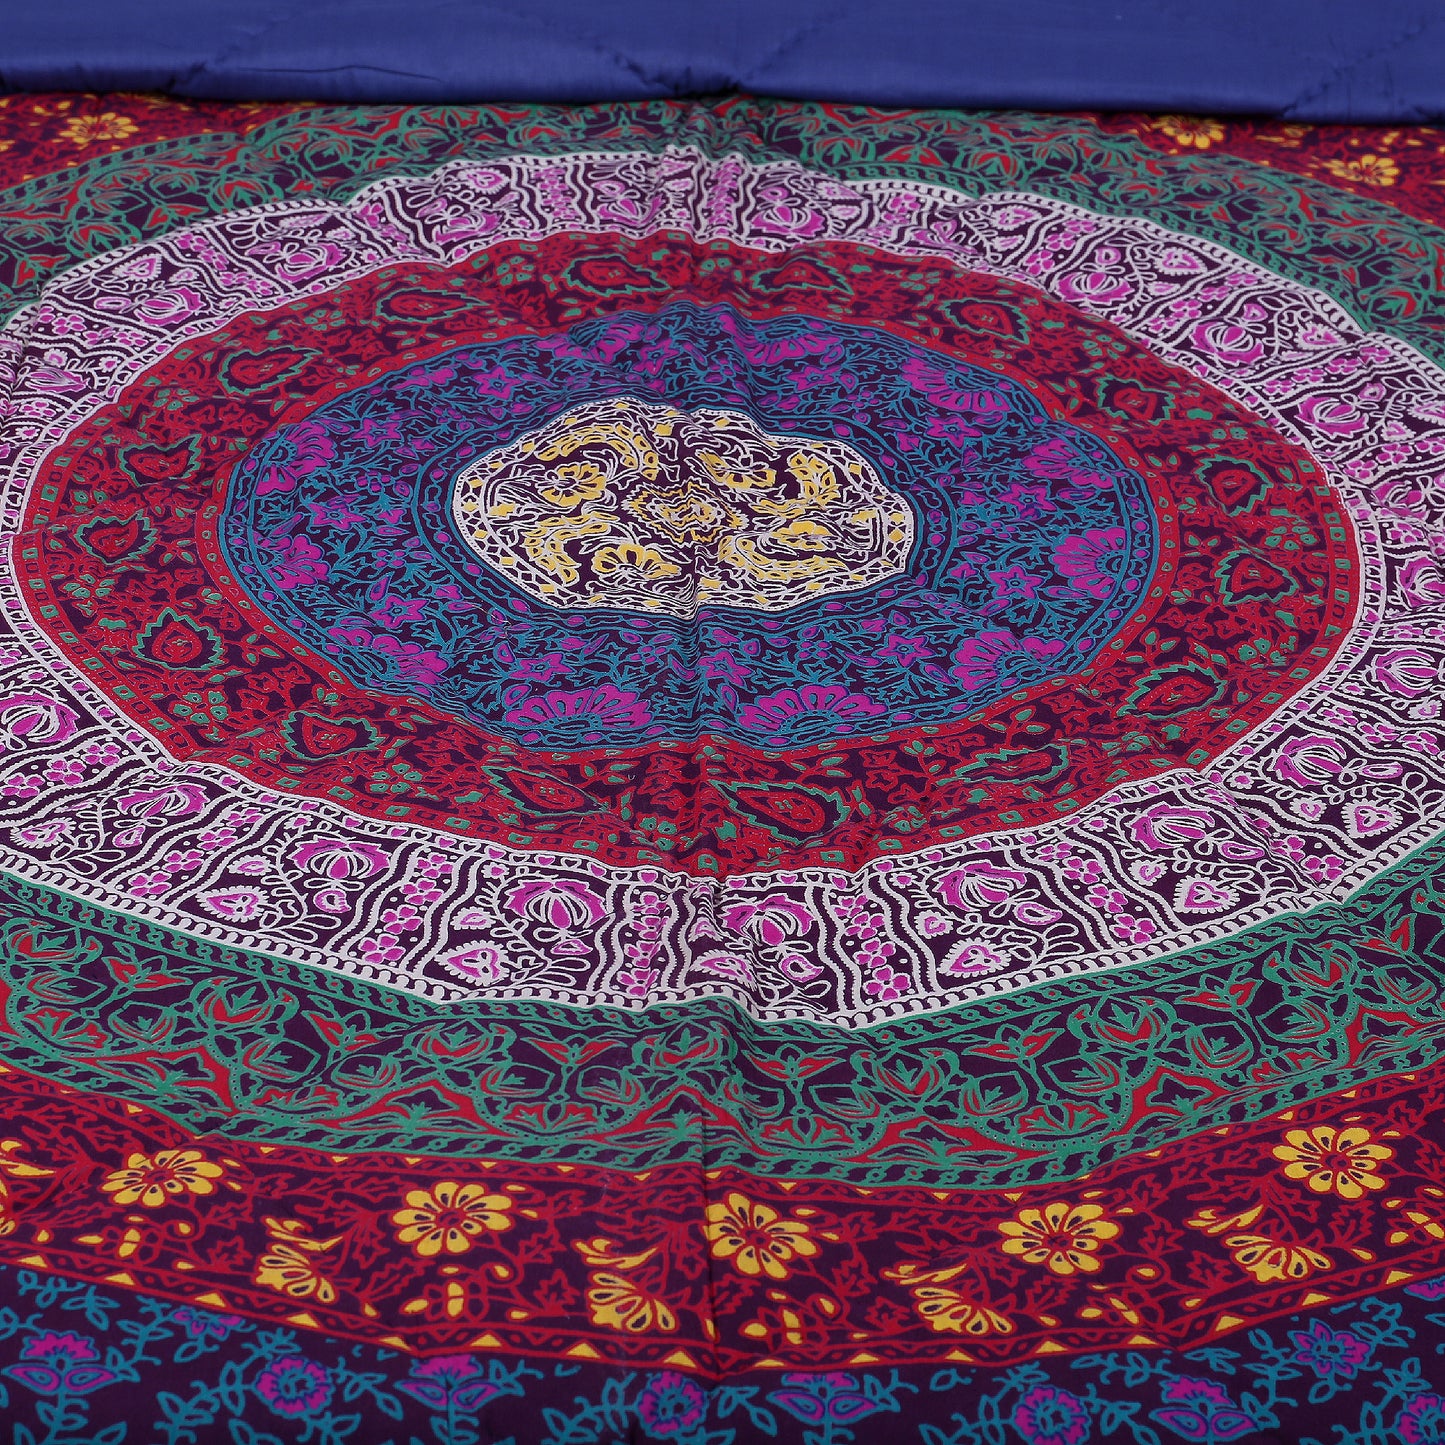 200 GSM Single Cotton Quilt Mandala Multicolor